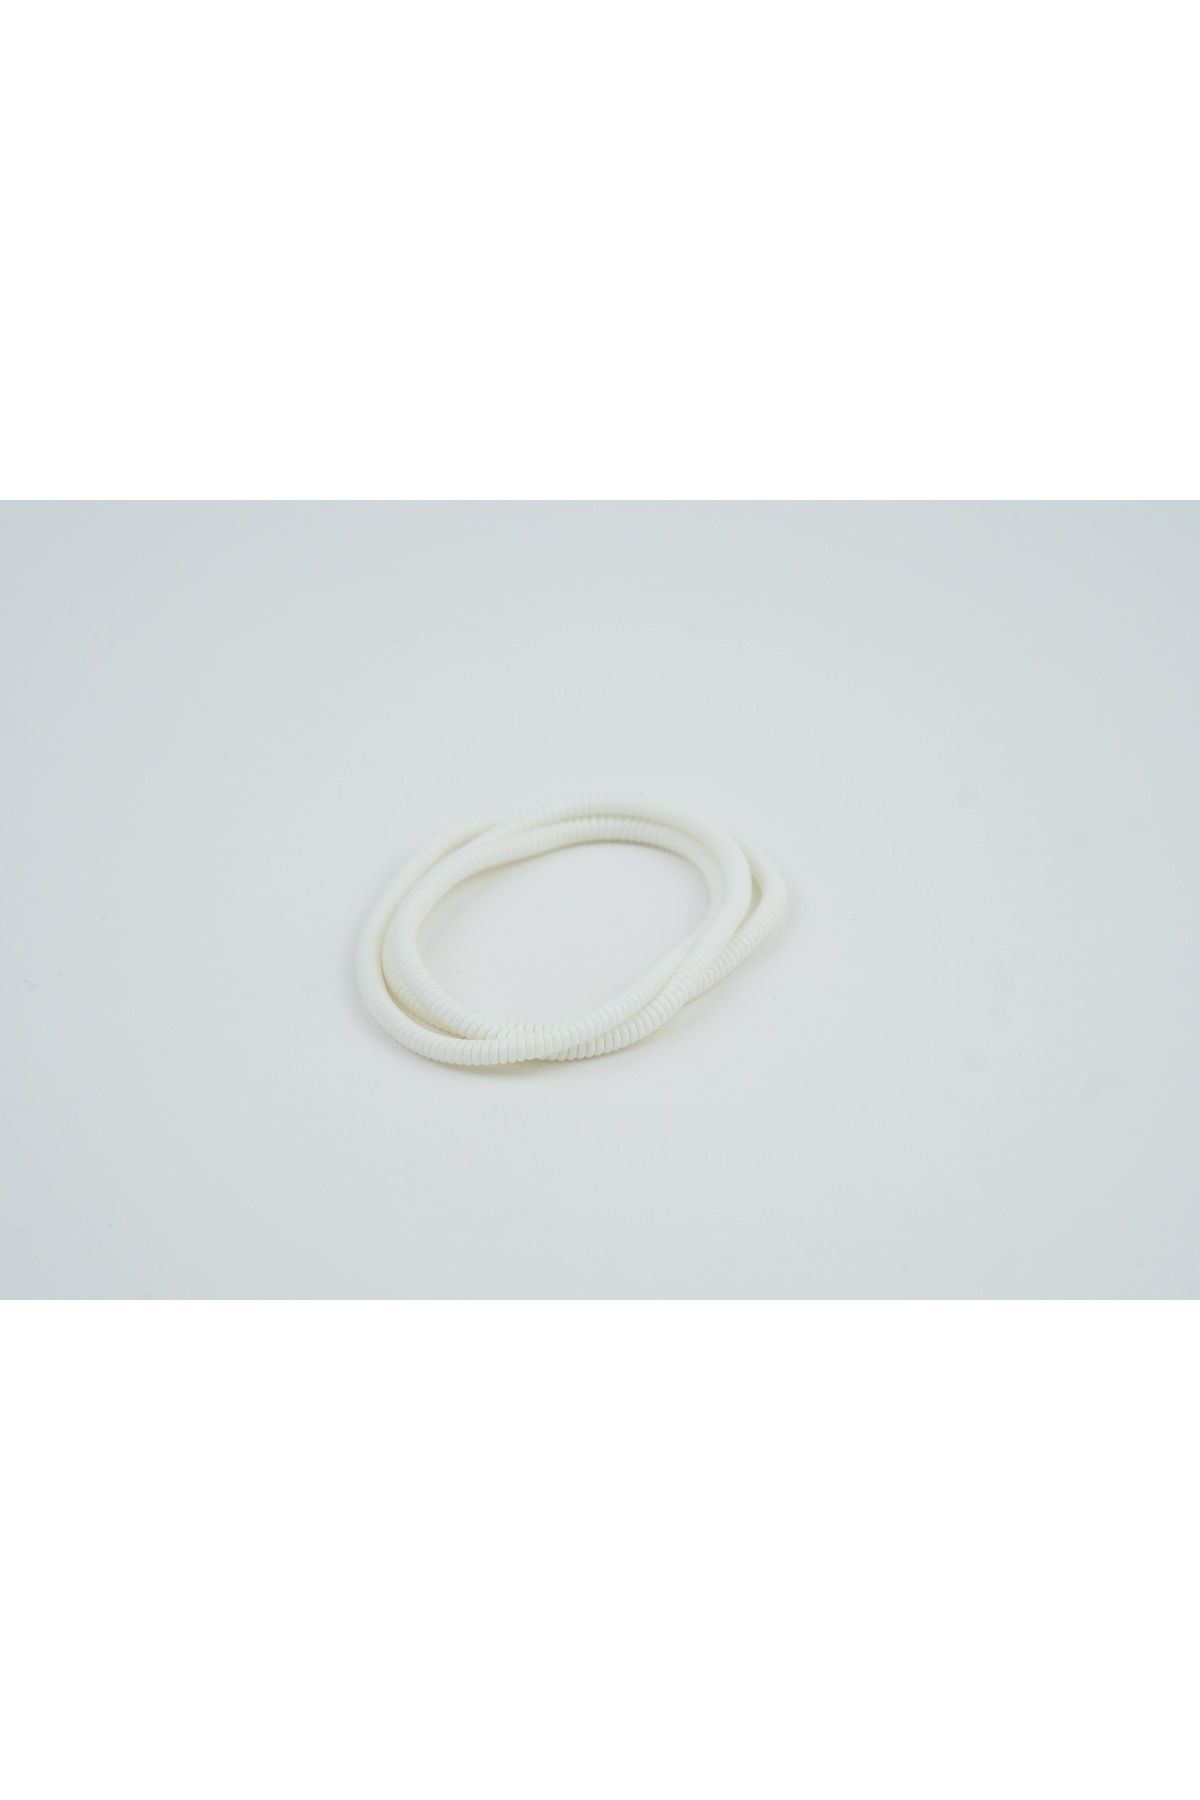 Spelt Kulaklık Kablosu Ince Kablo Kordon Koruyucu Spiral Sarma Kılıf Koruma Beyaz 50cm 4 Adet